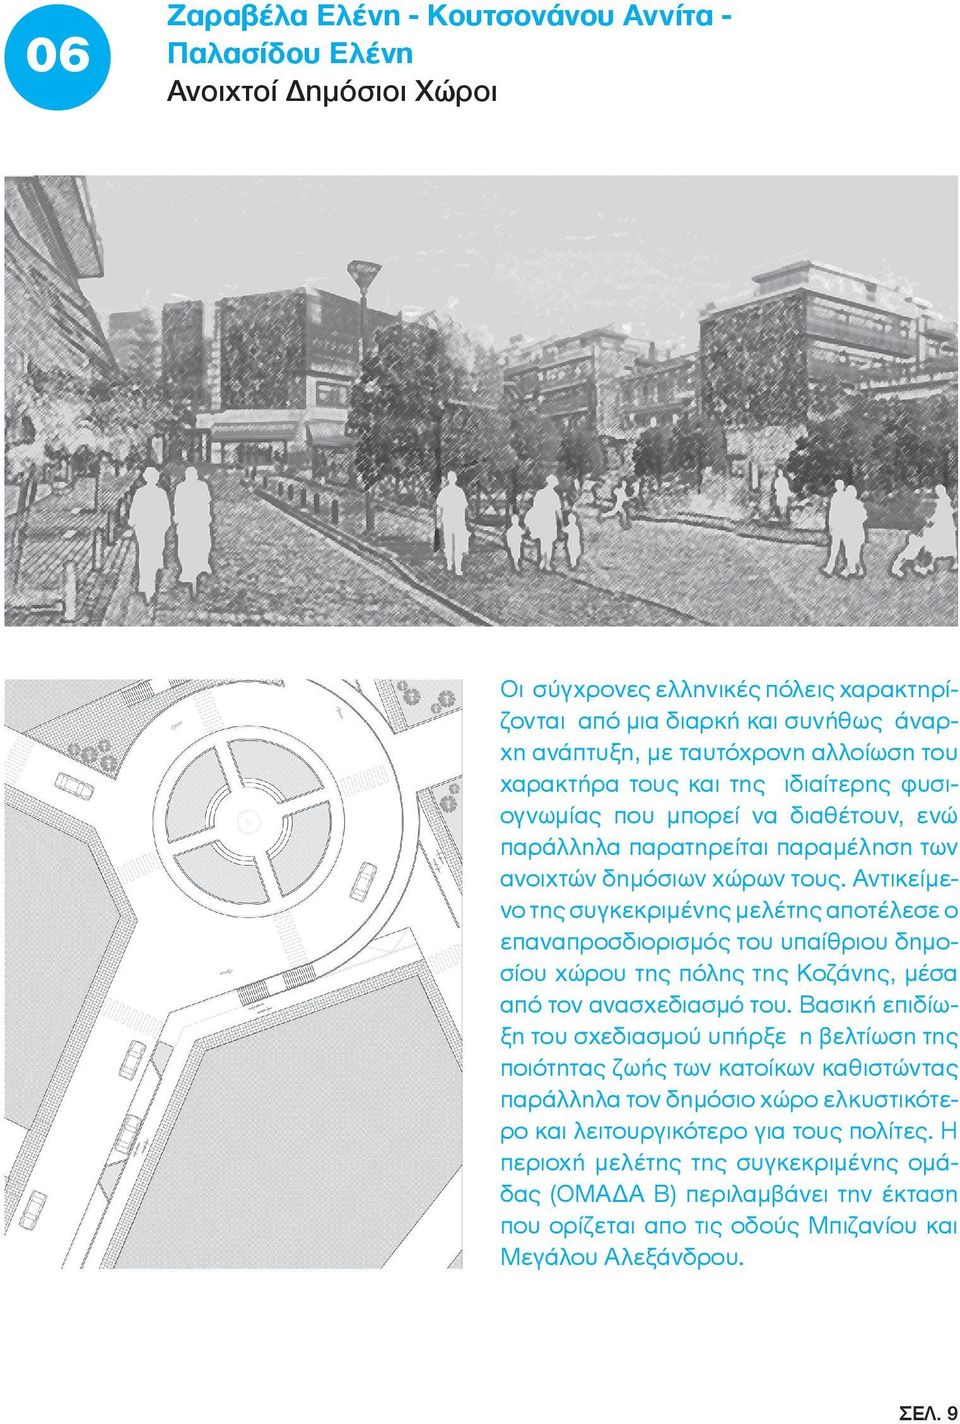 Αντικείμενο της συγκεκριμένης μελέτης αποτέλεσε ο επαναπροσδιορισμός του υπαίθριου δημοσίου χώρου της πόλης της Κοζάνης, μέσα από τον ανασχεδιασμό του.